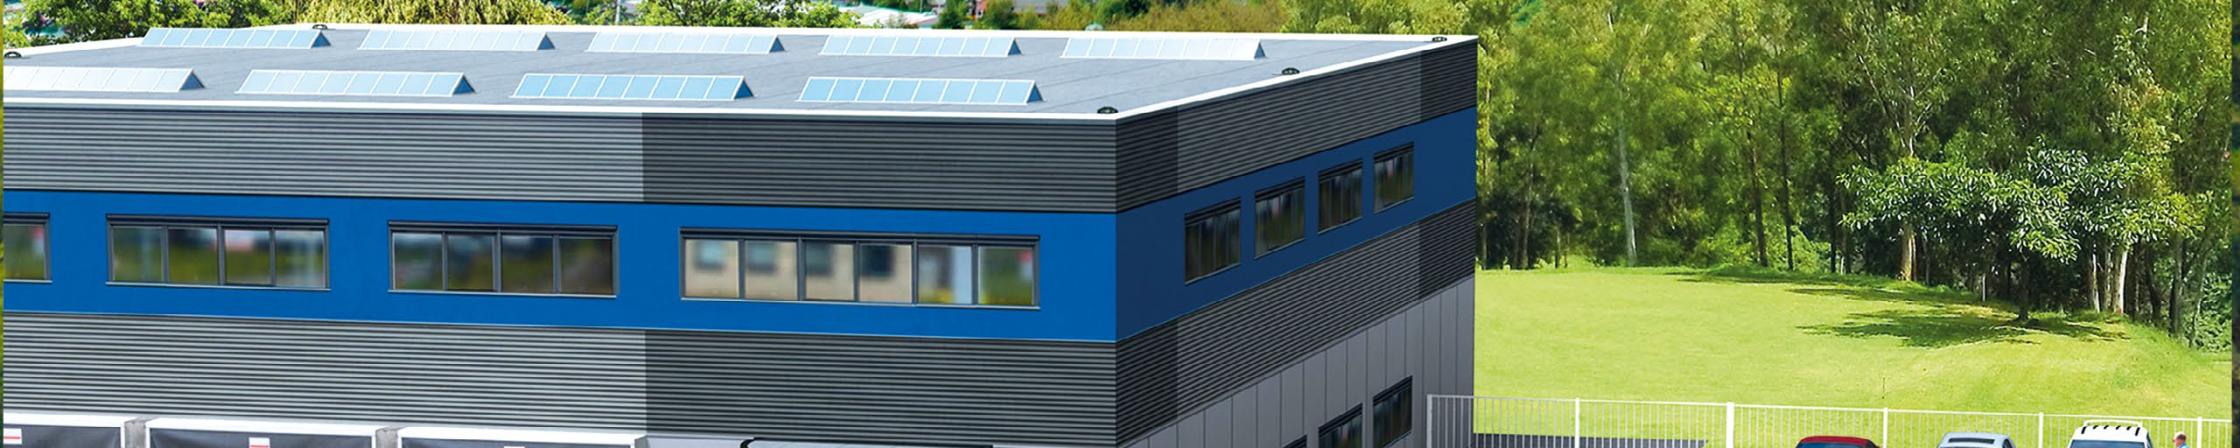 3D d'un Bâtiment Industriel avec solutions de collecte d'eau pluviales en toiture